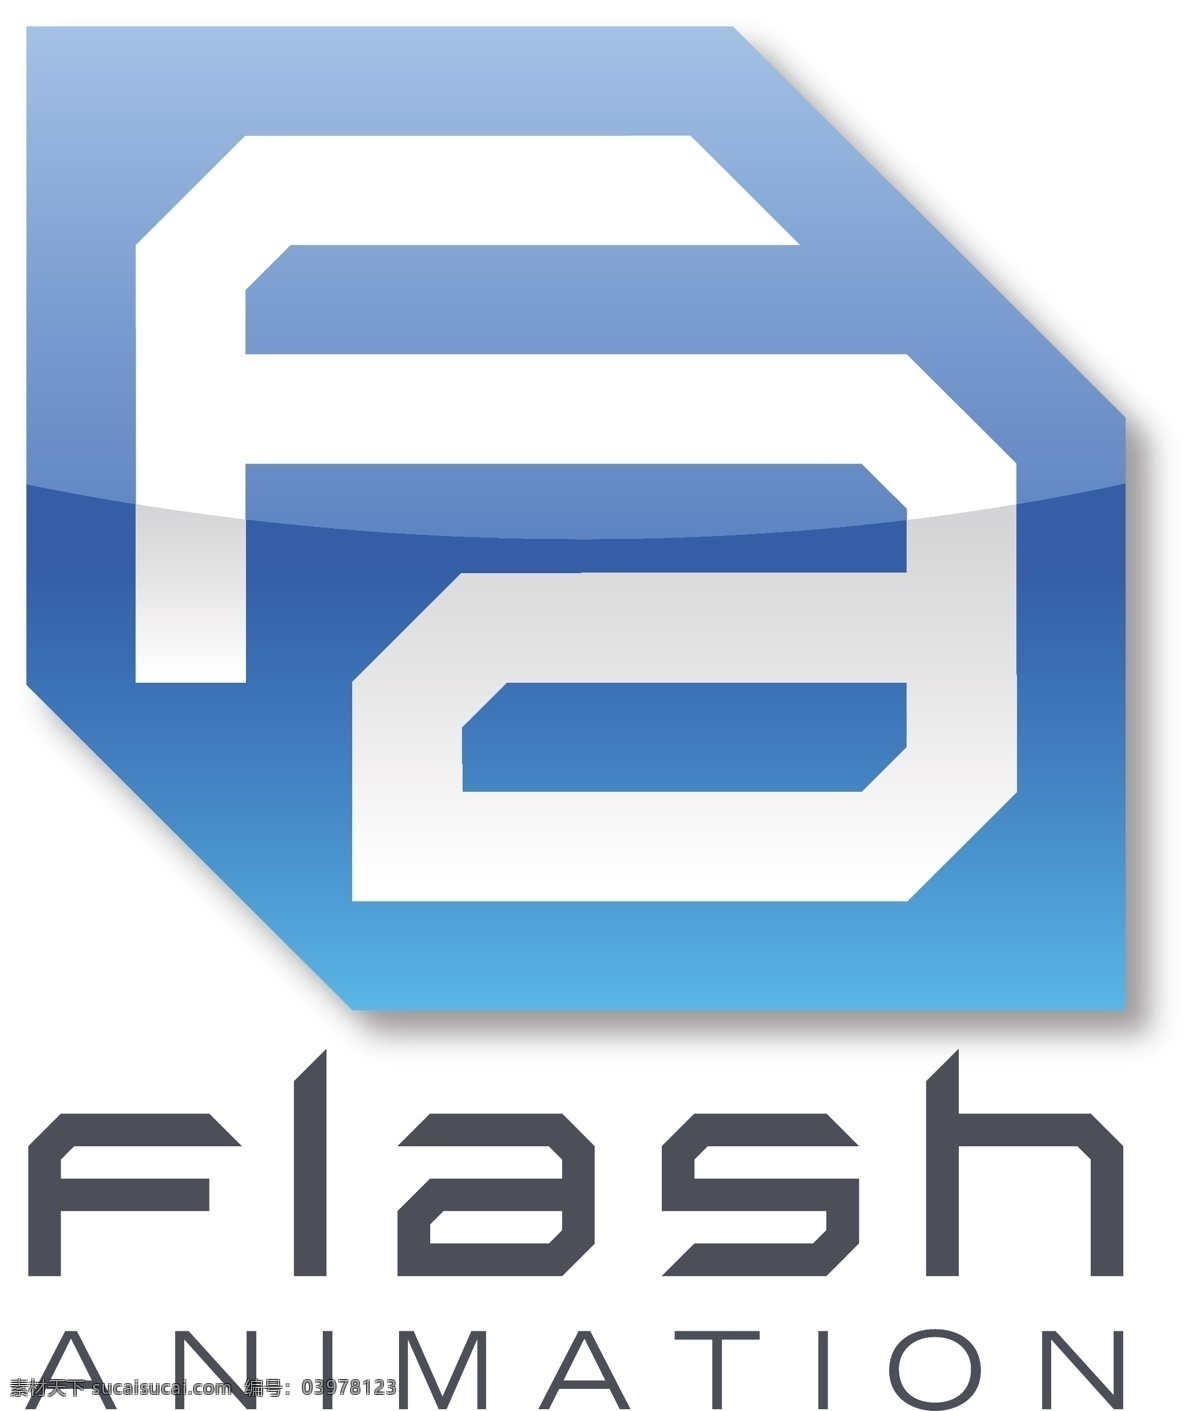 flash 动画 标识 公司 免费 品牌 品牌标识 商标 矢量标志下载 免费矢量标识 矢量 psd源文件 logo设计